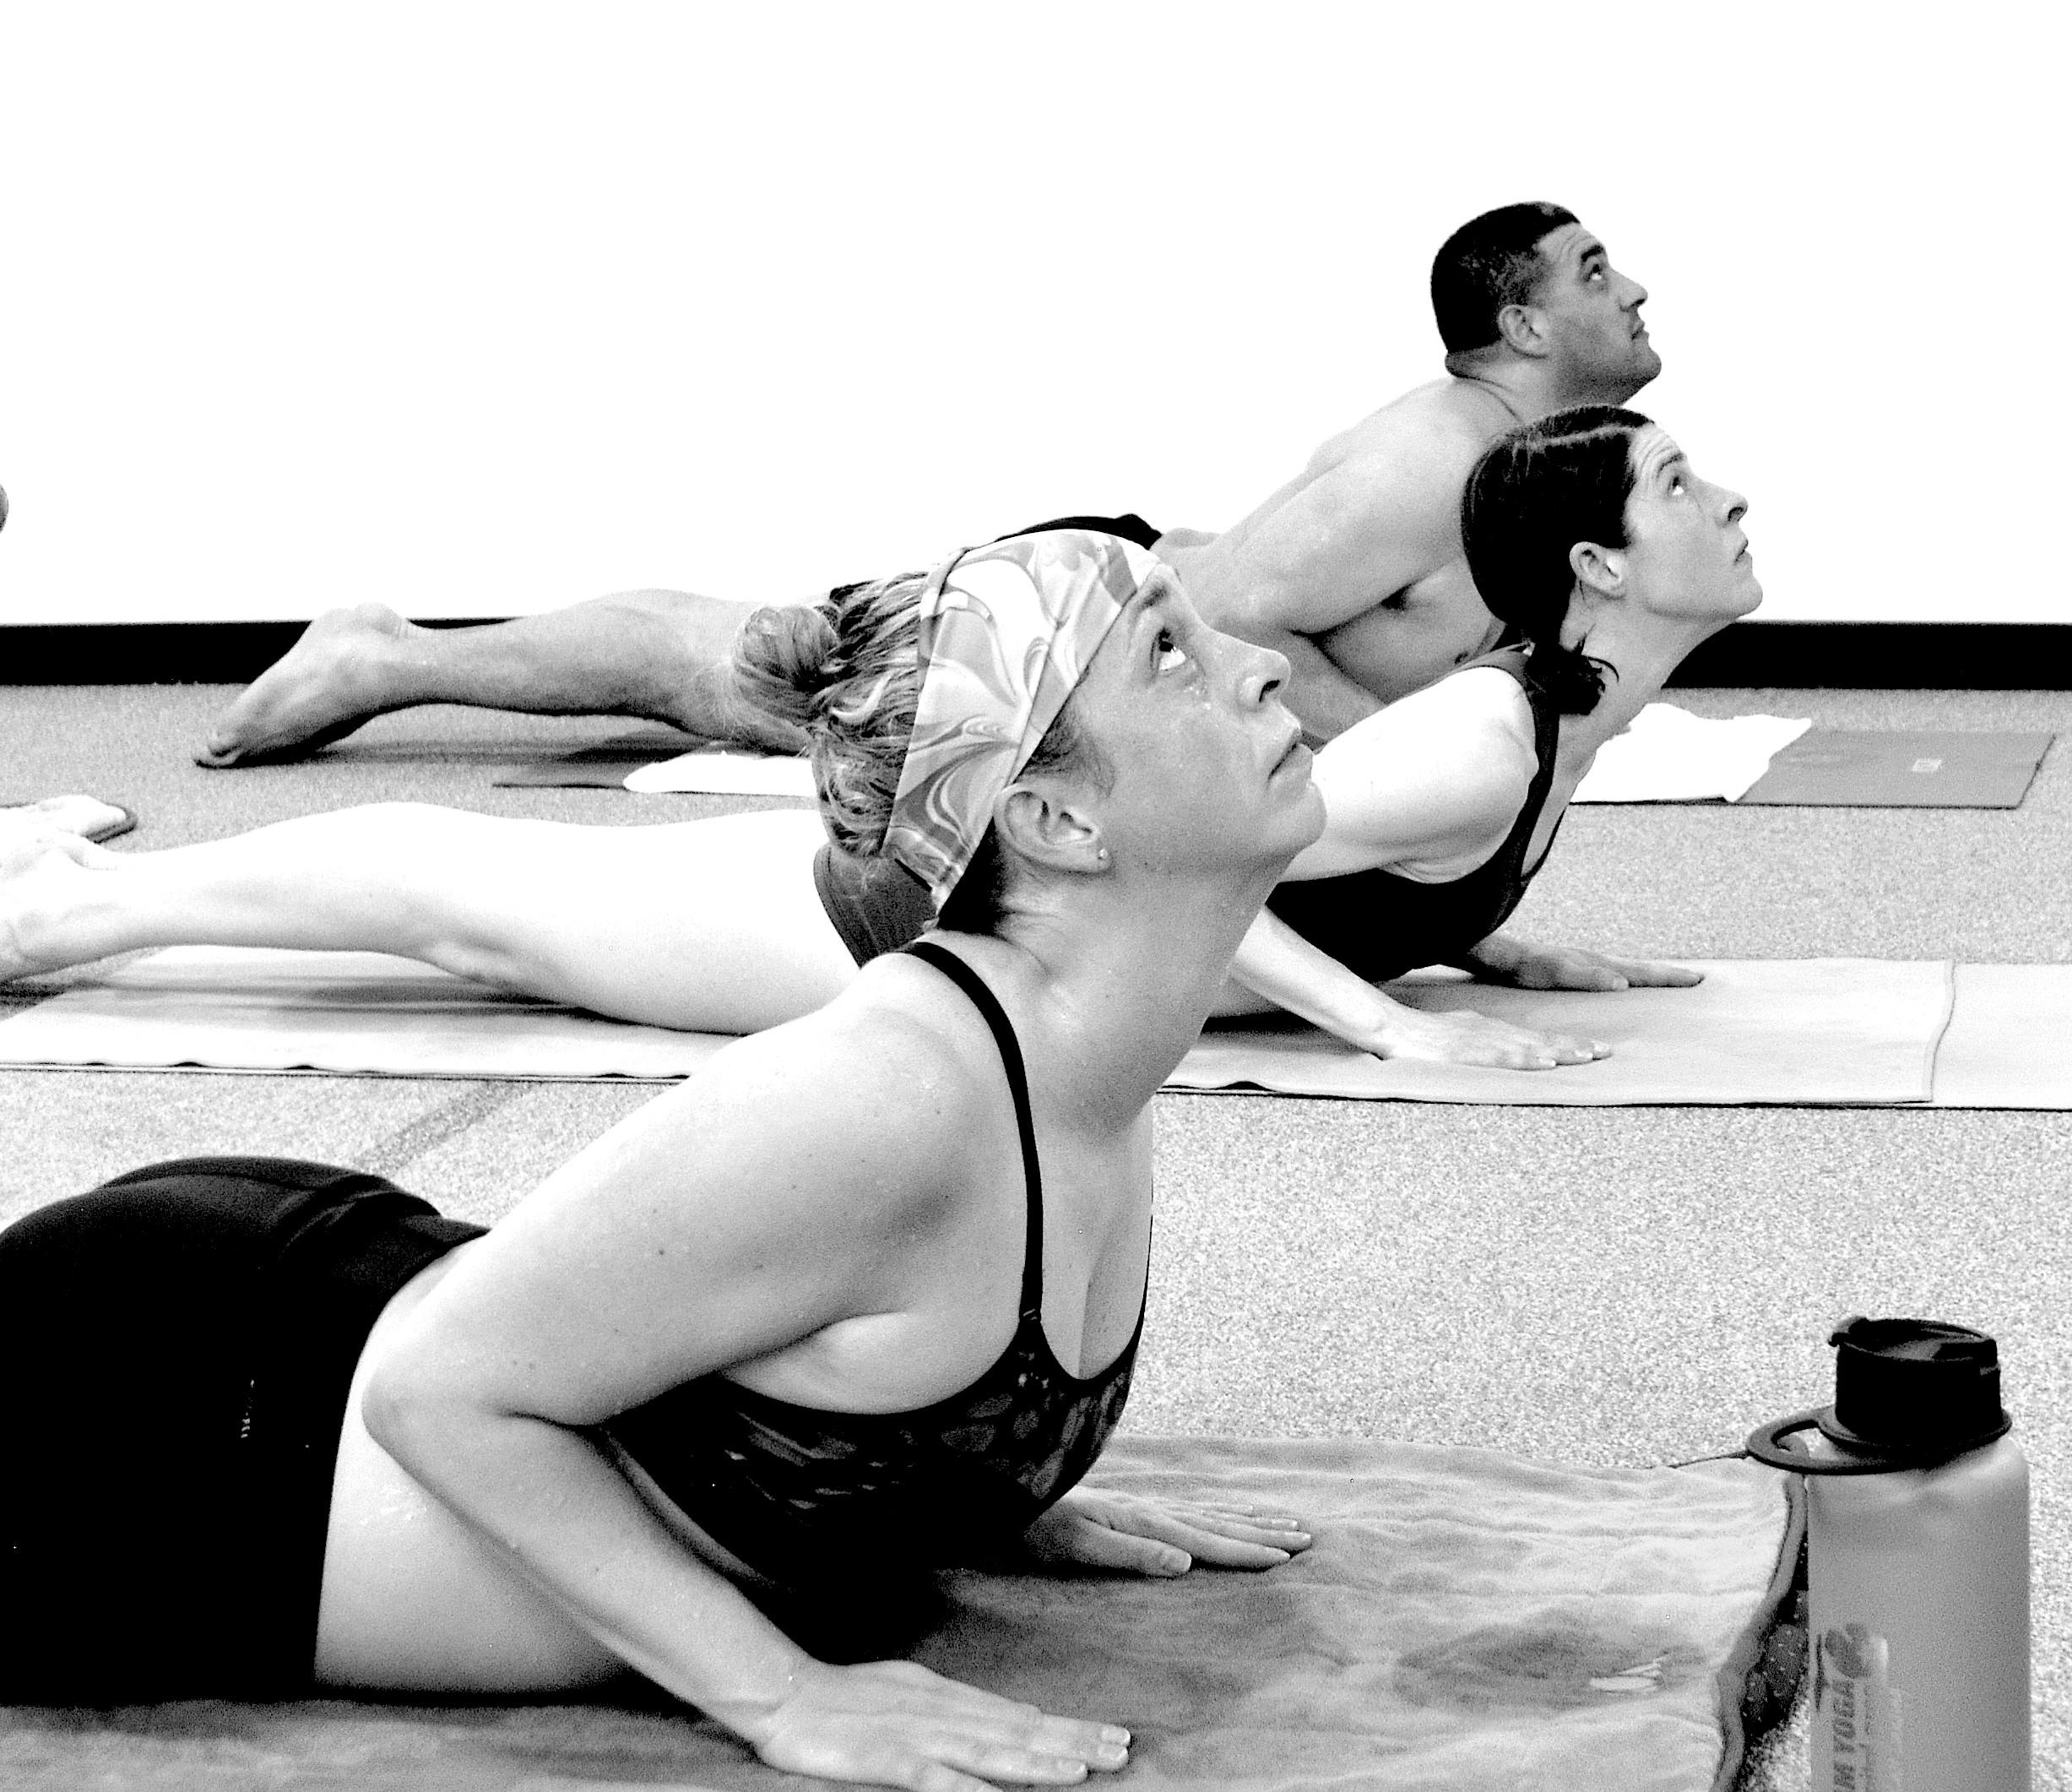 Pranayama - Breathing - Day 5 - 2020 - Bikram Pranayama - Hot Yoga Breath